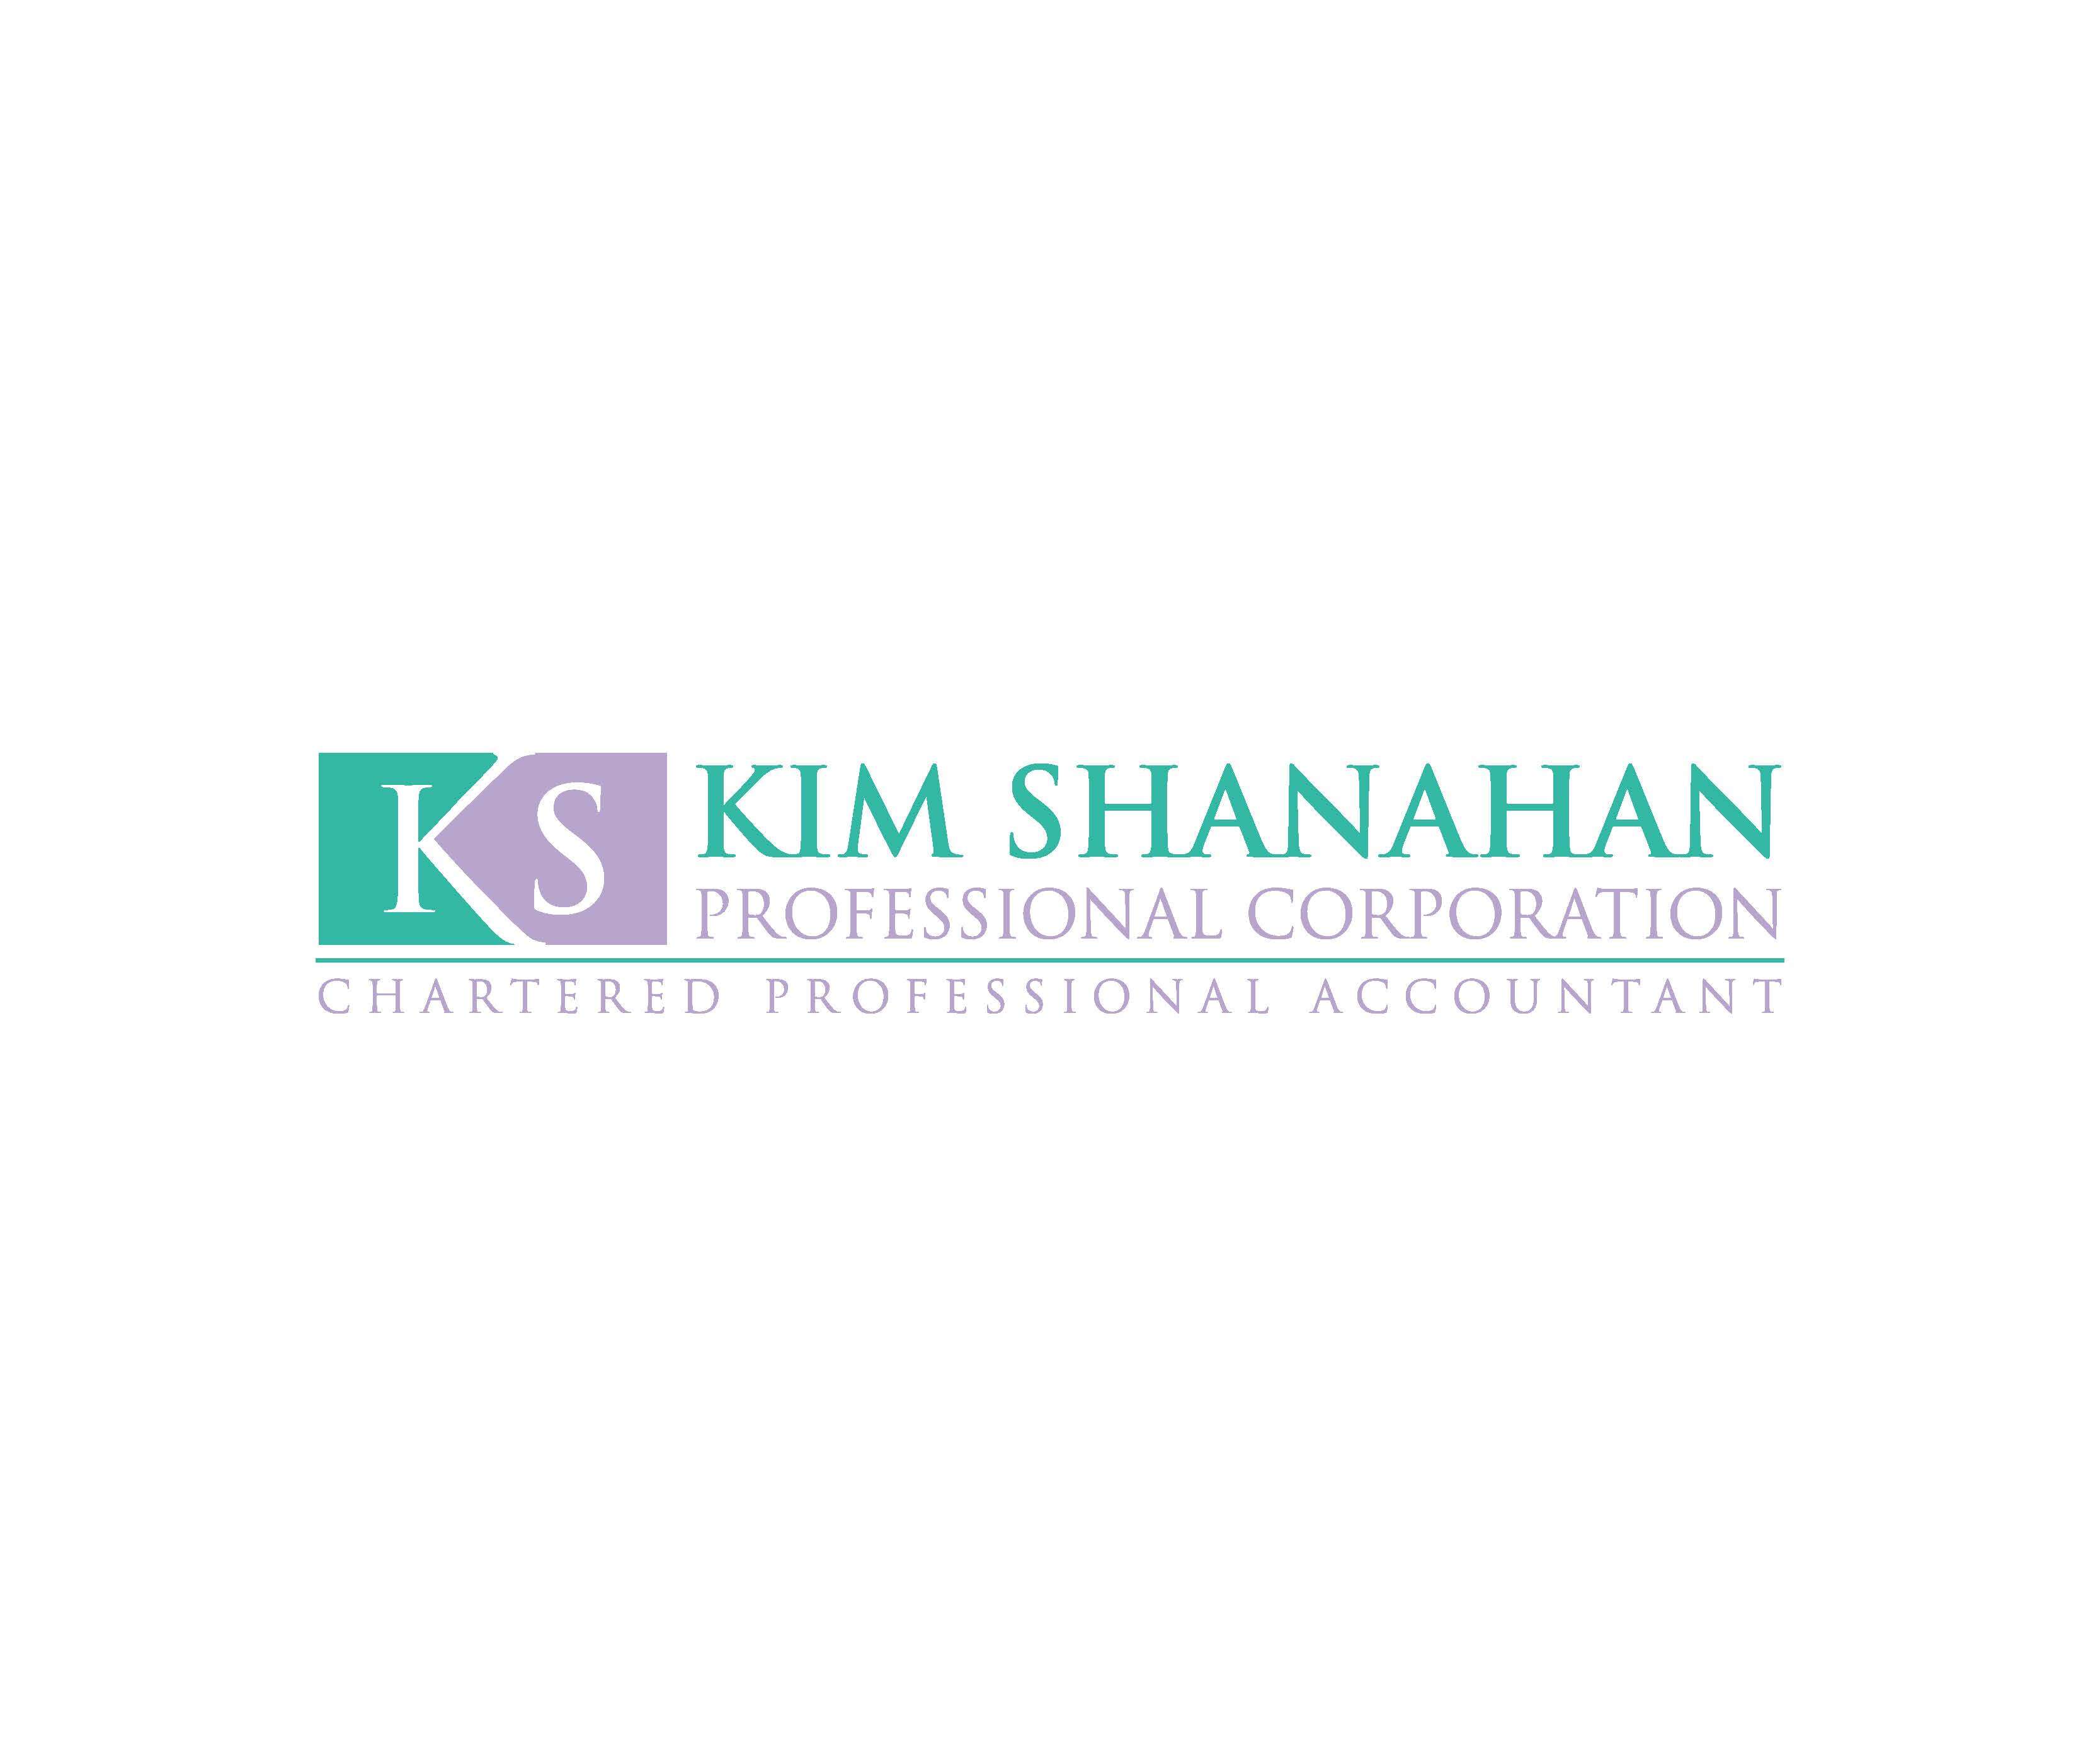 Kim Shanahan Professional Corporation